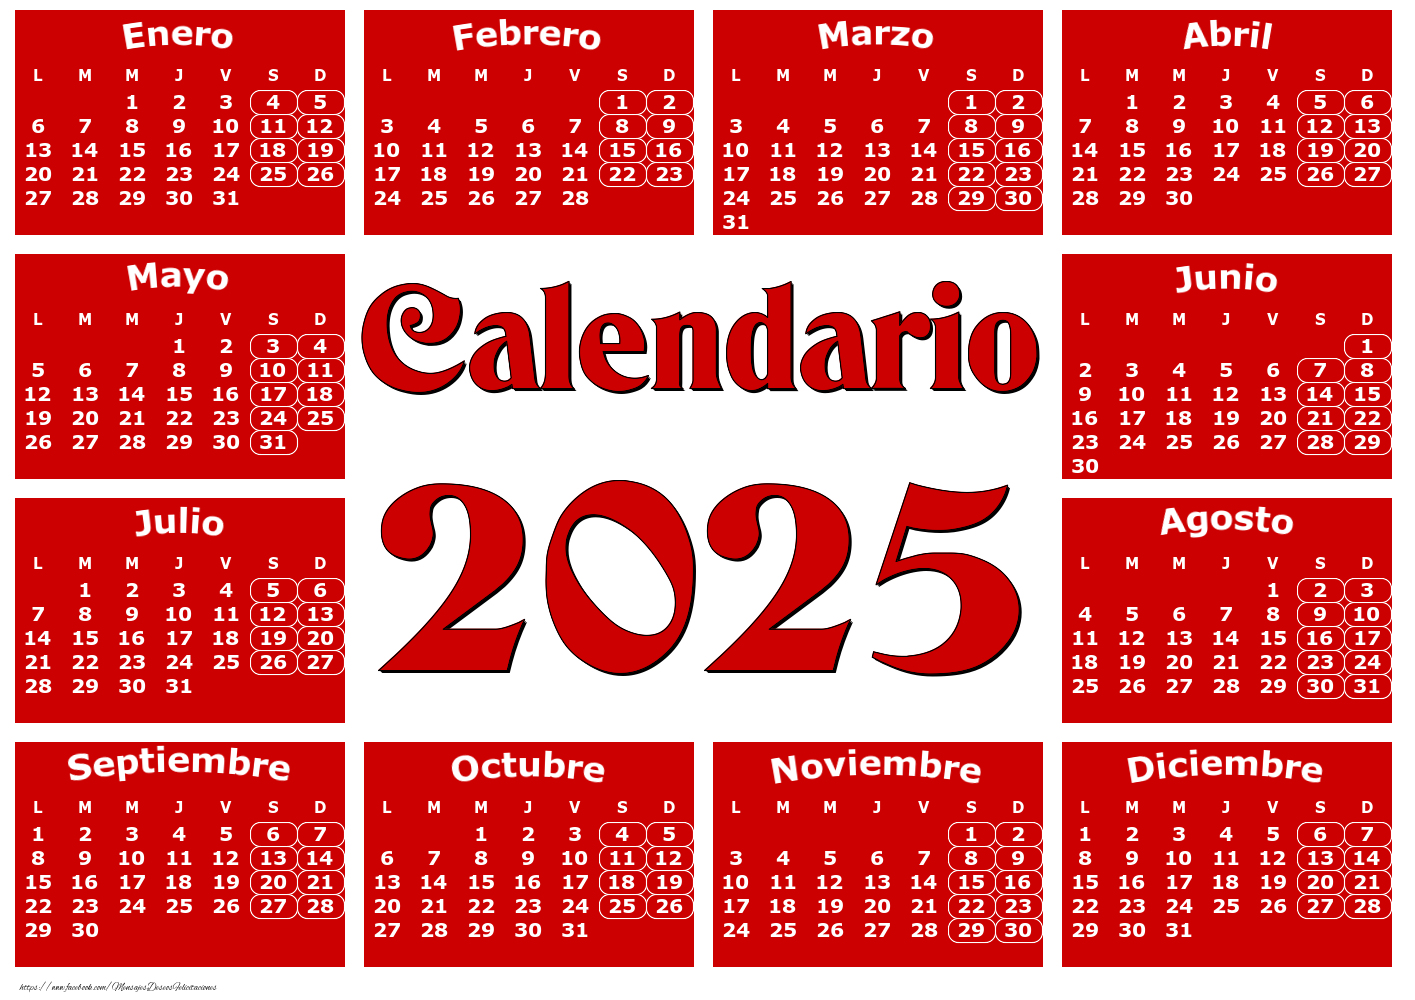 Calendario 2025 - Rojo clásico - Modelo 0020